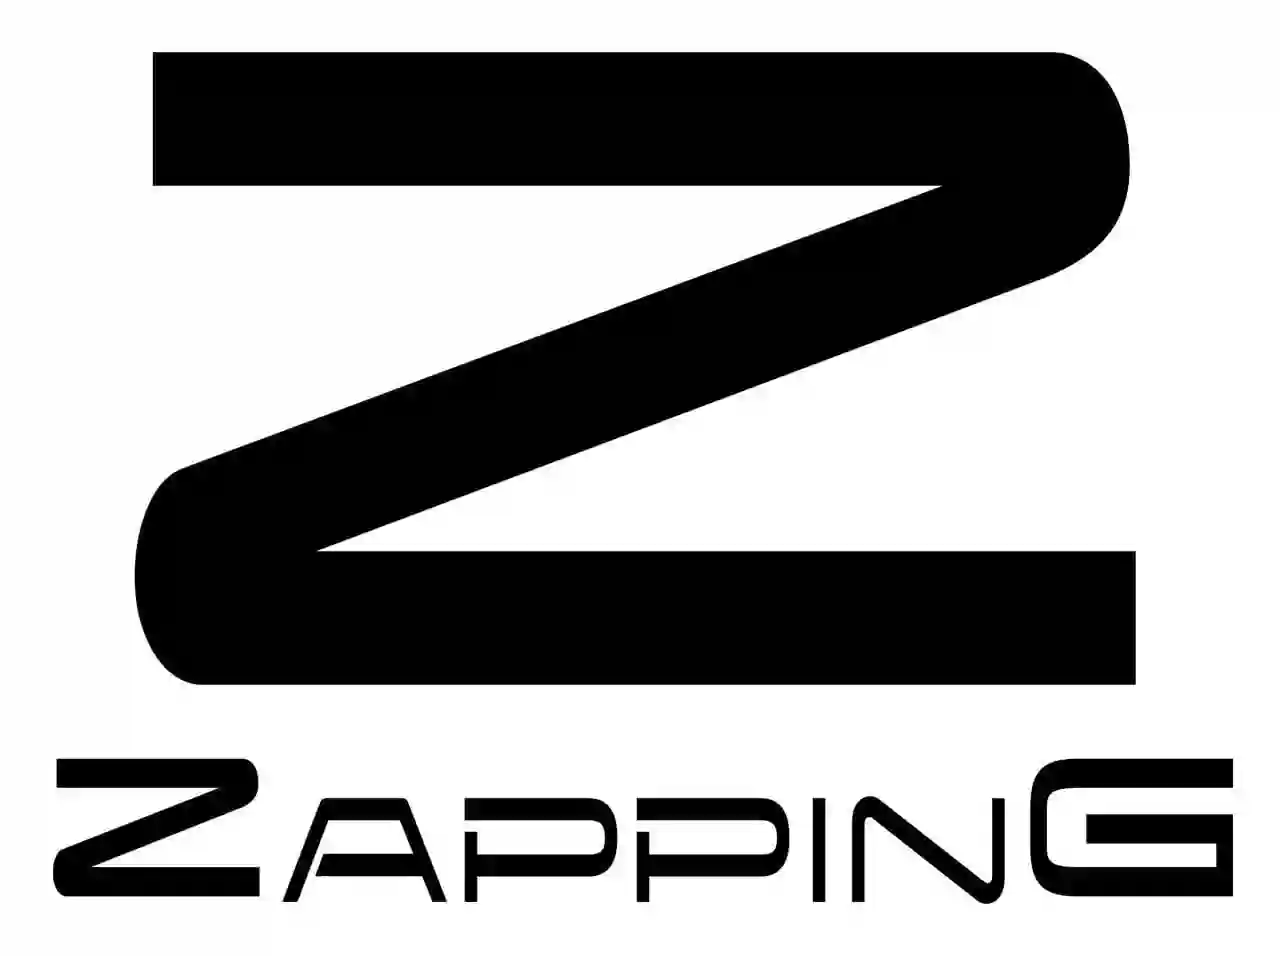 Zapping Café-Bar